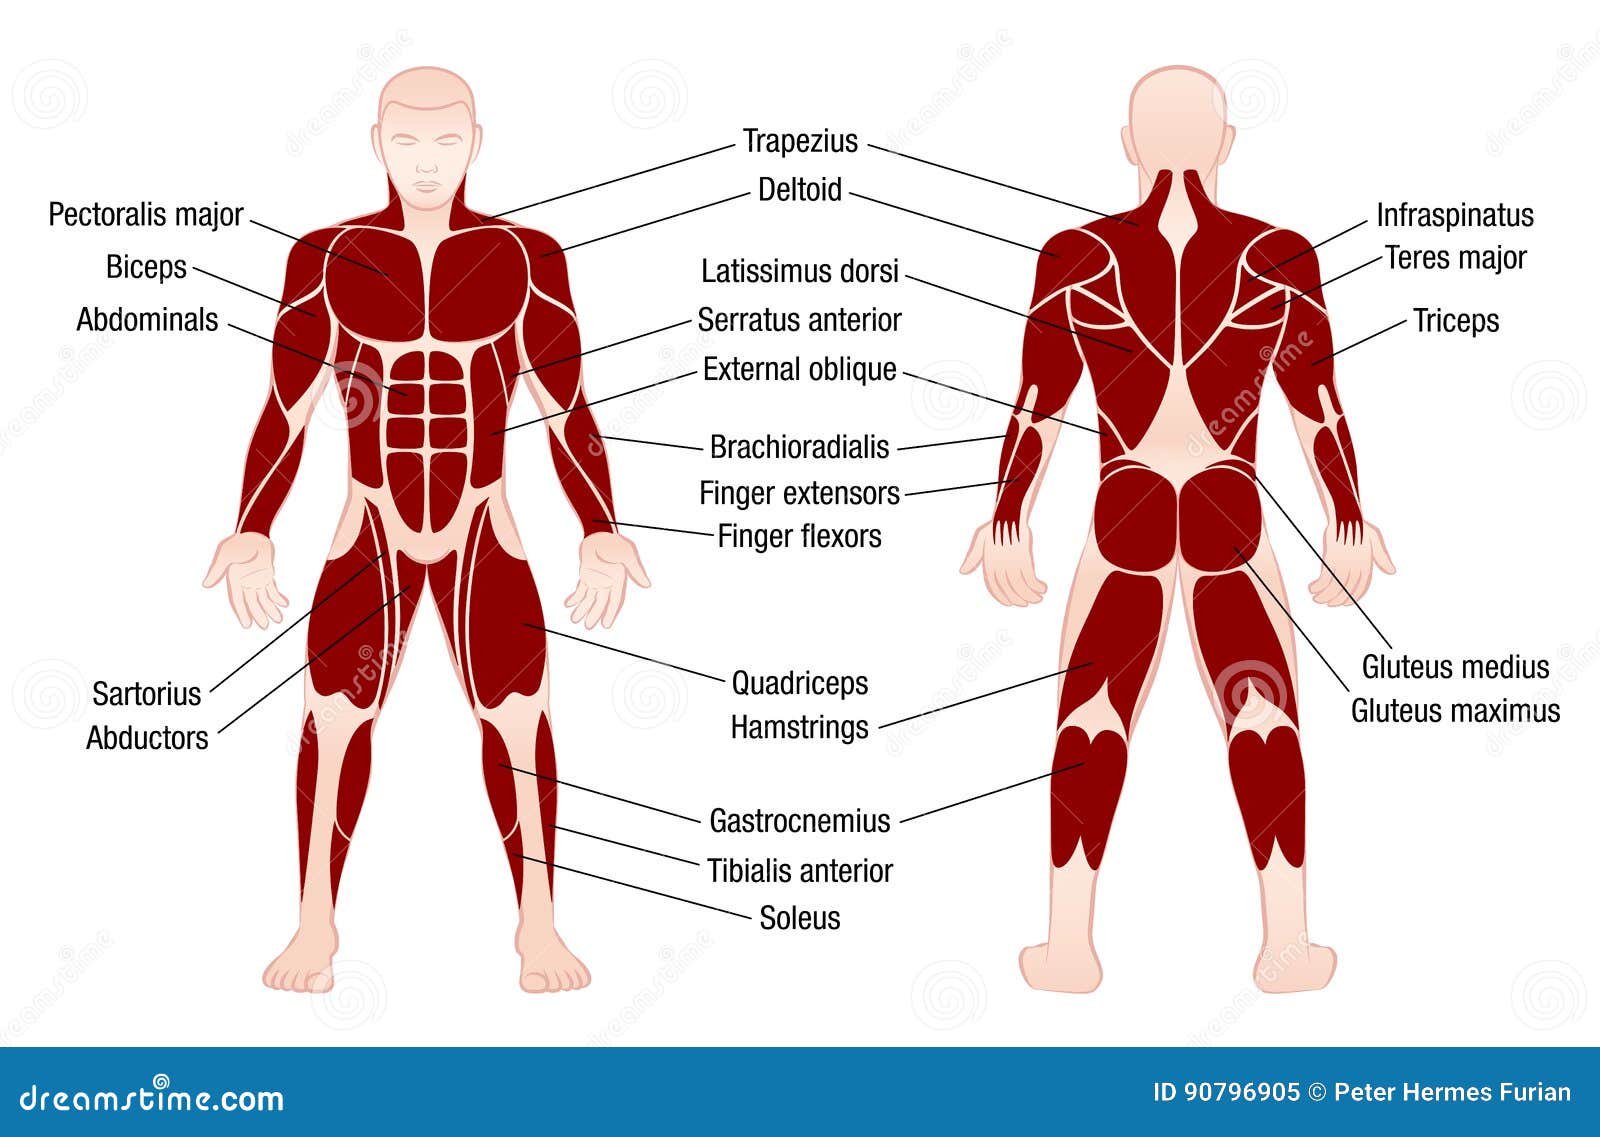 muscles chart description muscular body man